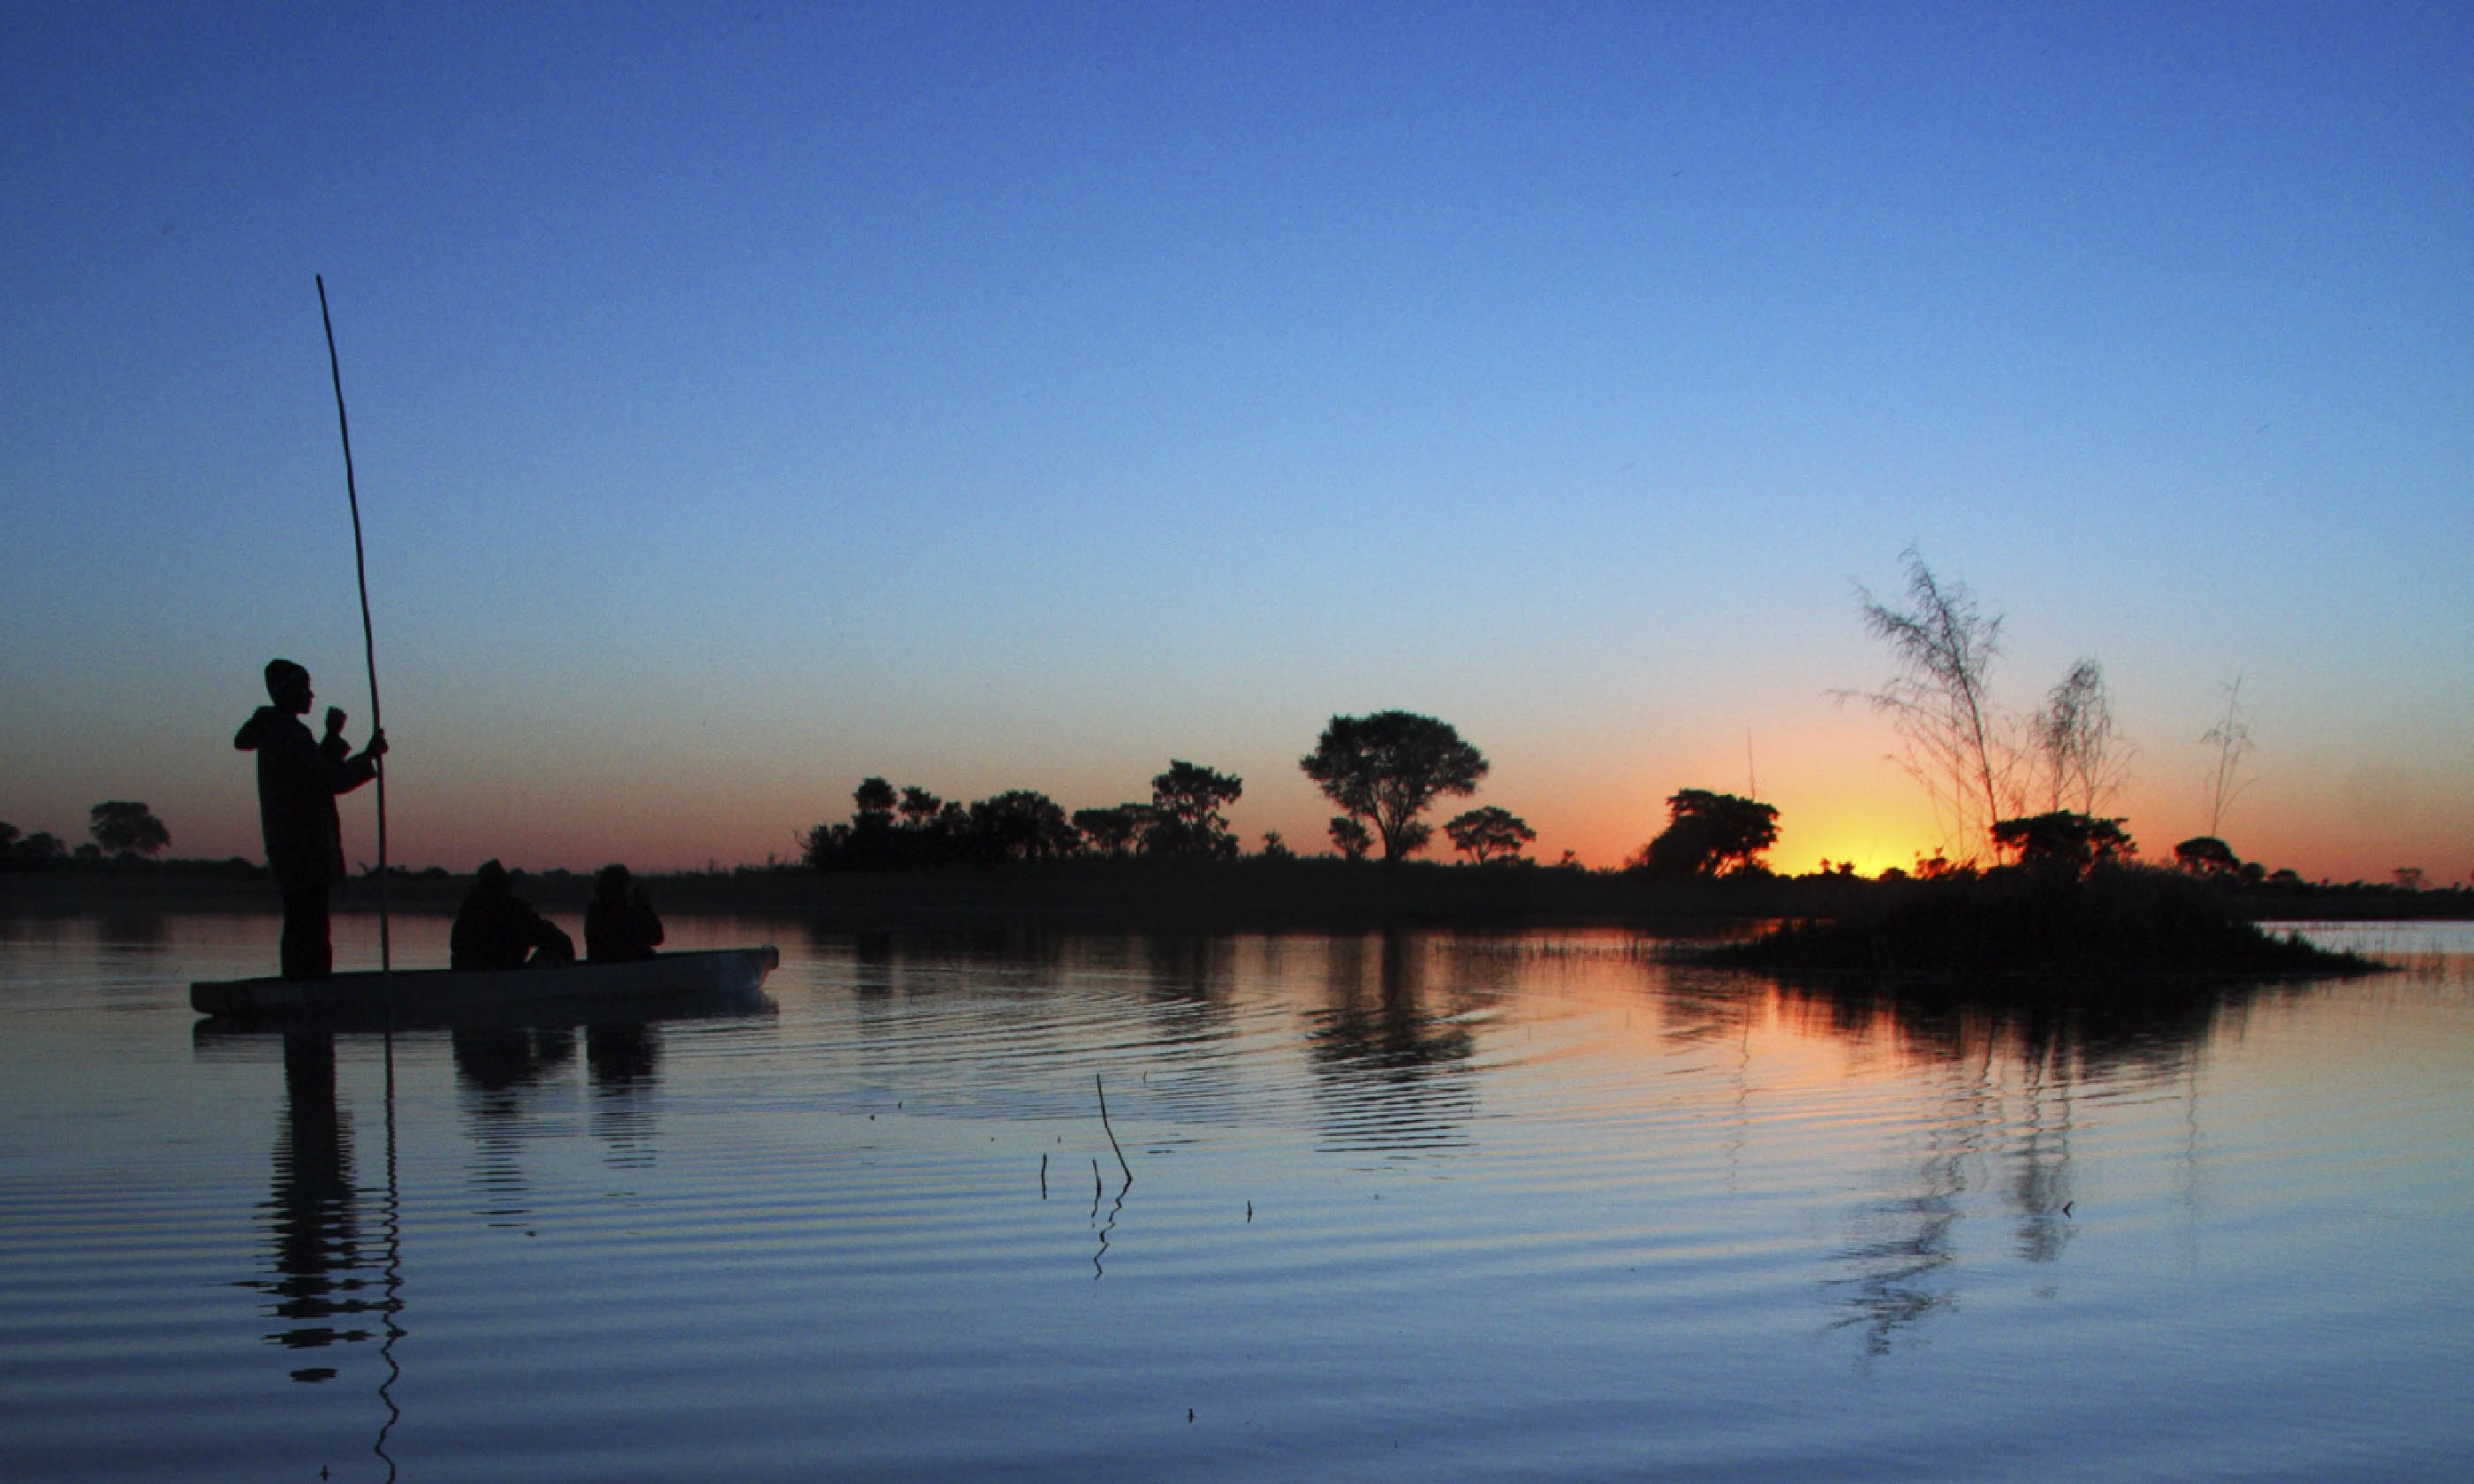 Okavango Delta, a UNESCO World Heritage Site (Shutterstock: see credit below)